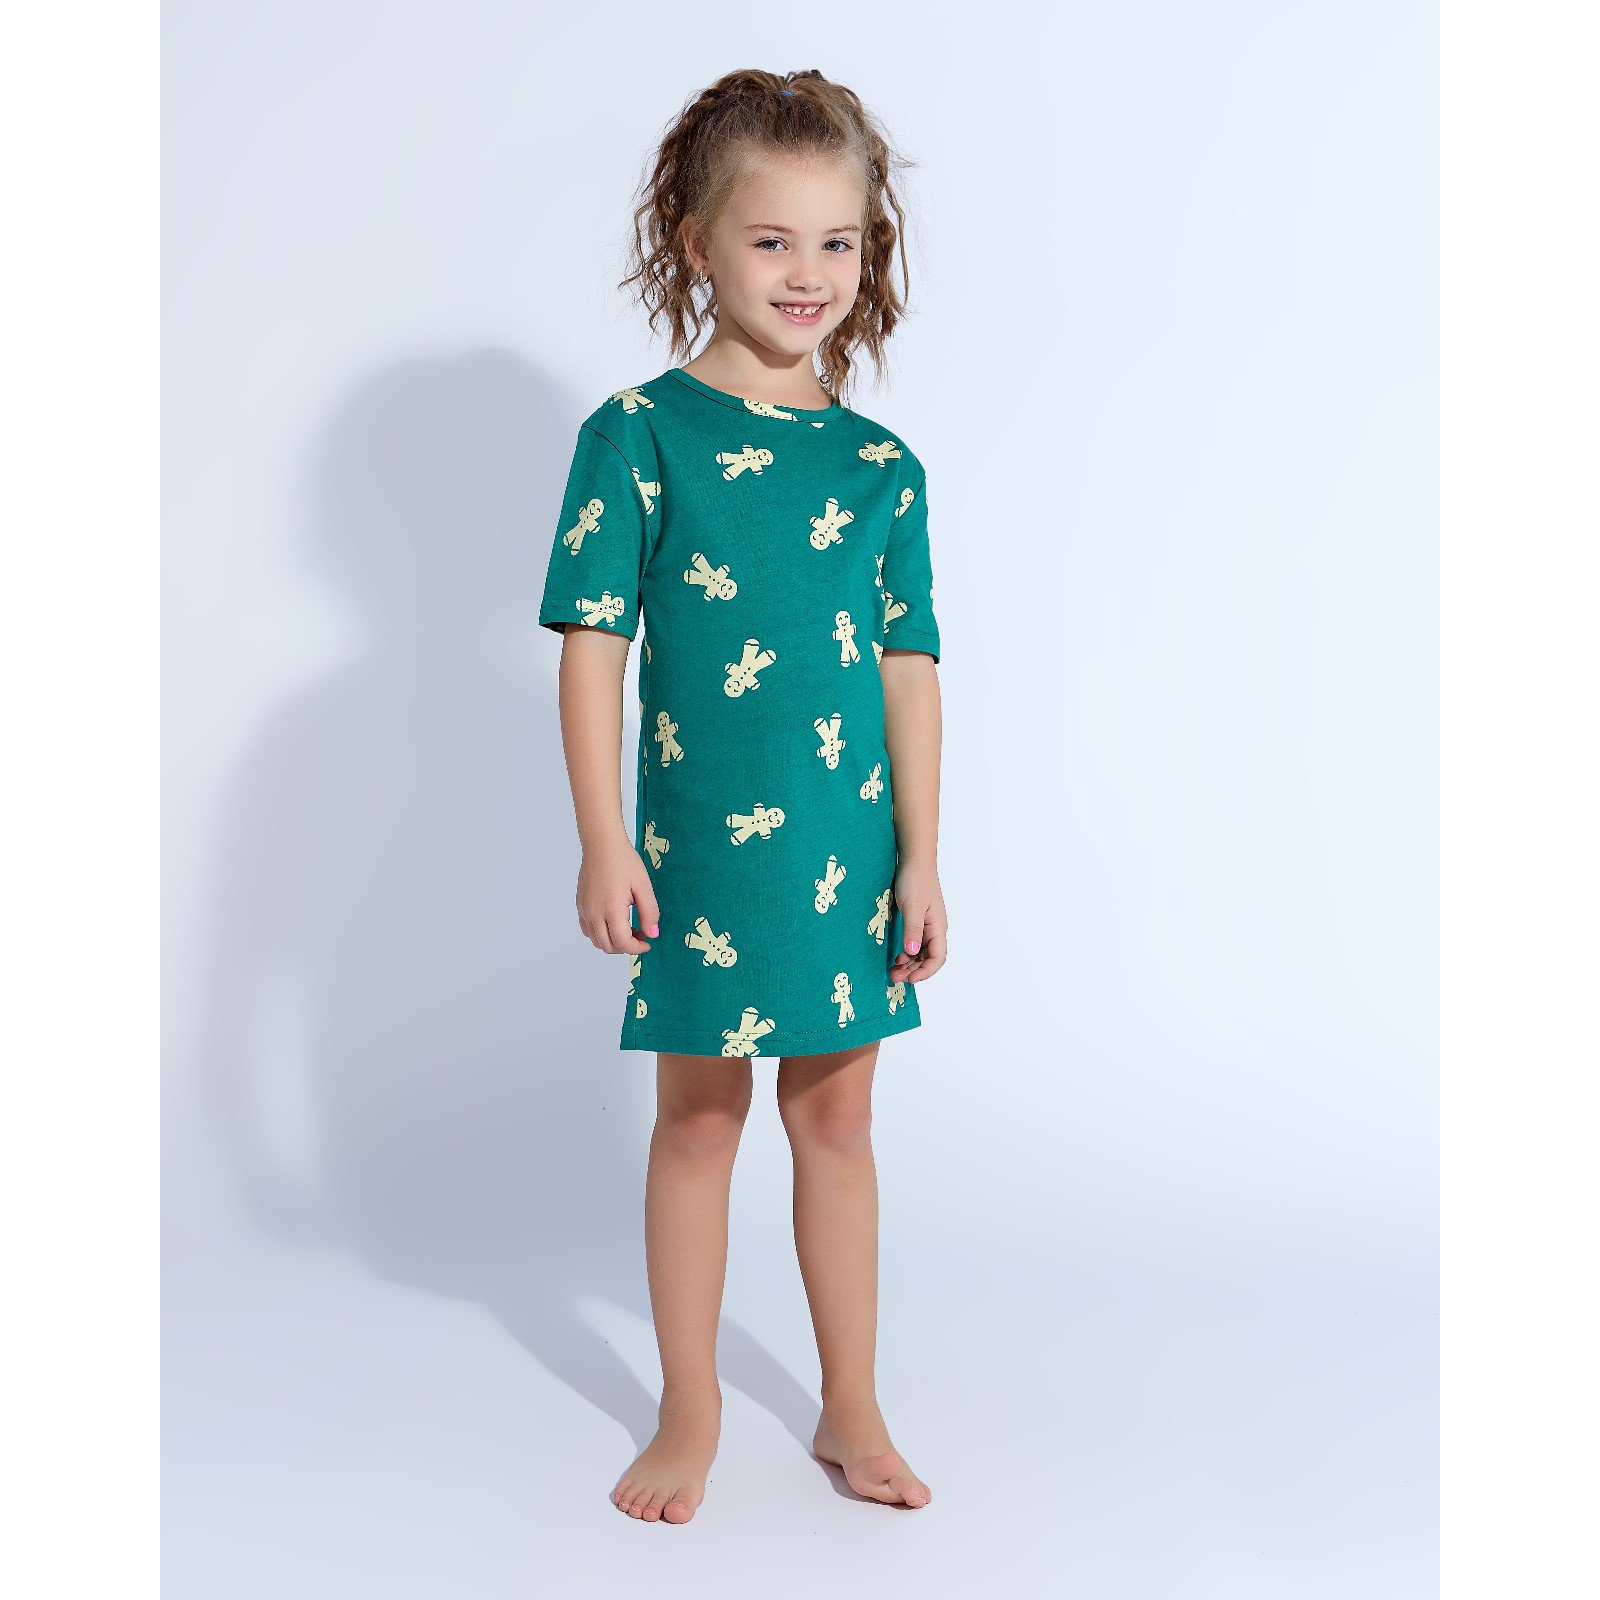 Детская ночная сорочка Печеньки Цвет: Зелёный (8 лет), размер 8 лет mak600422 Детская ночная сорочка Печеньки Цвет: Зелёный (8 лет) - фото 1